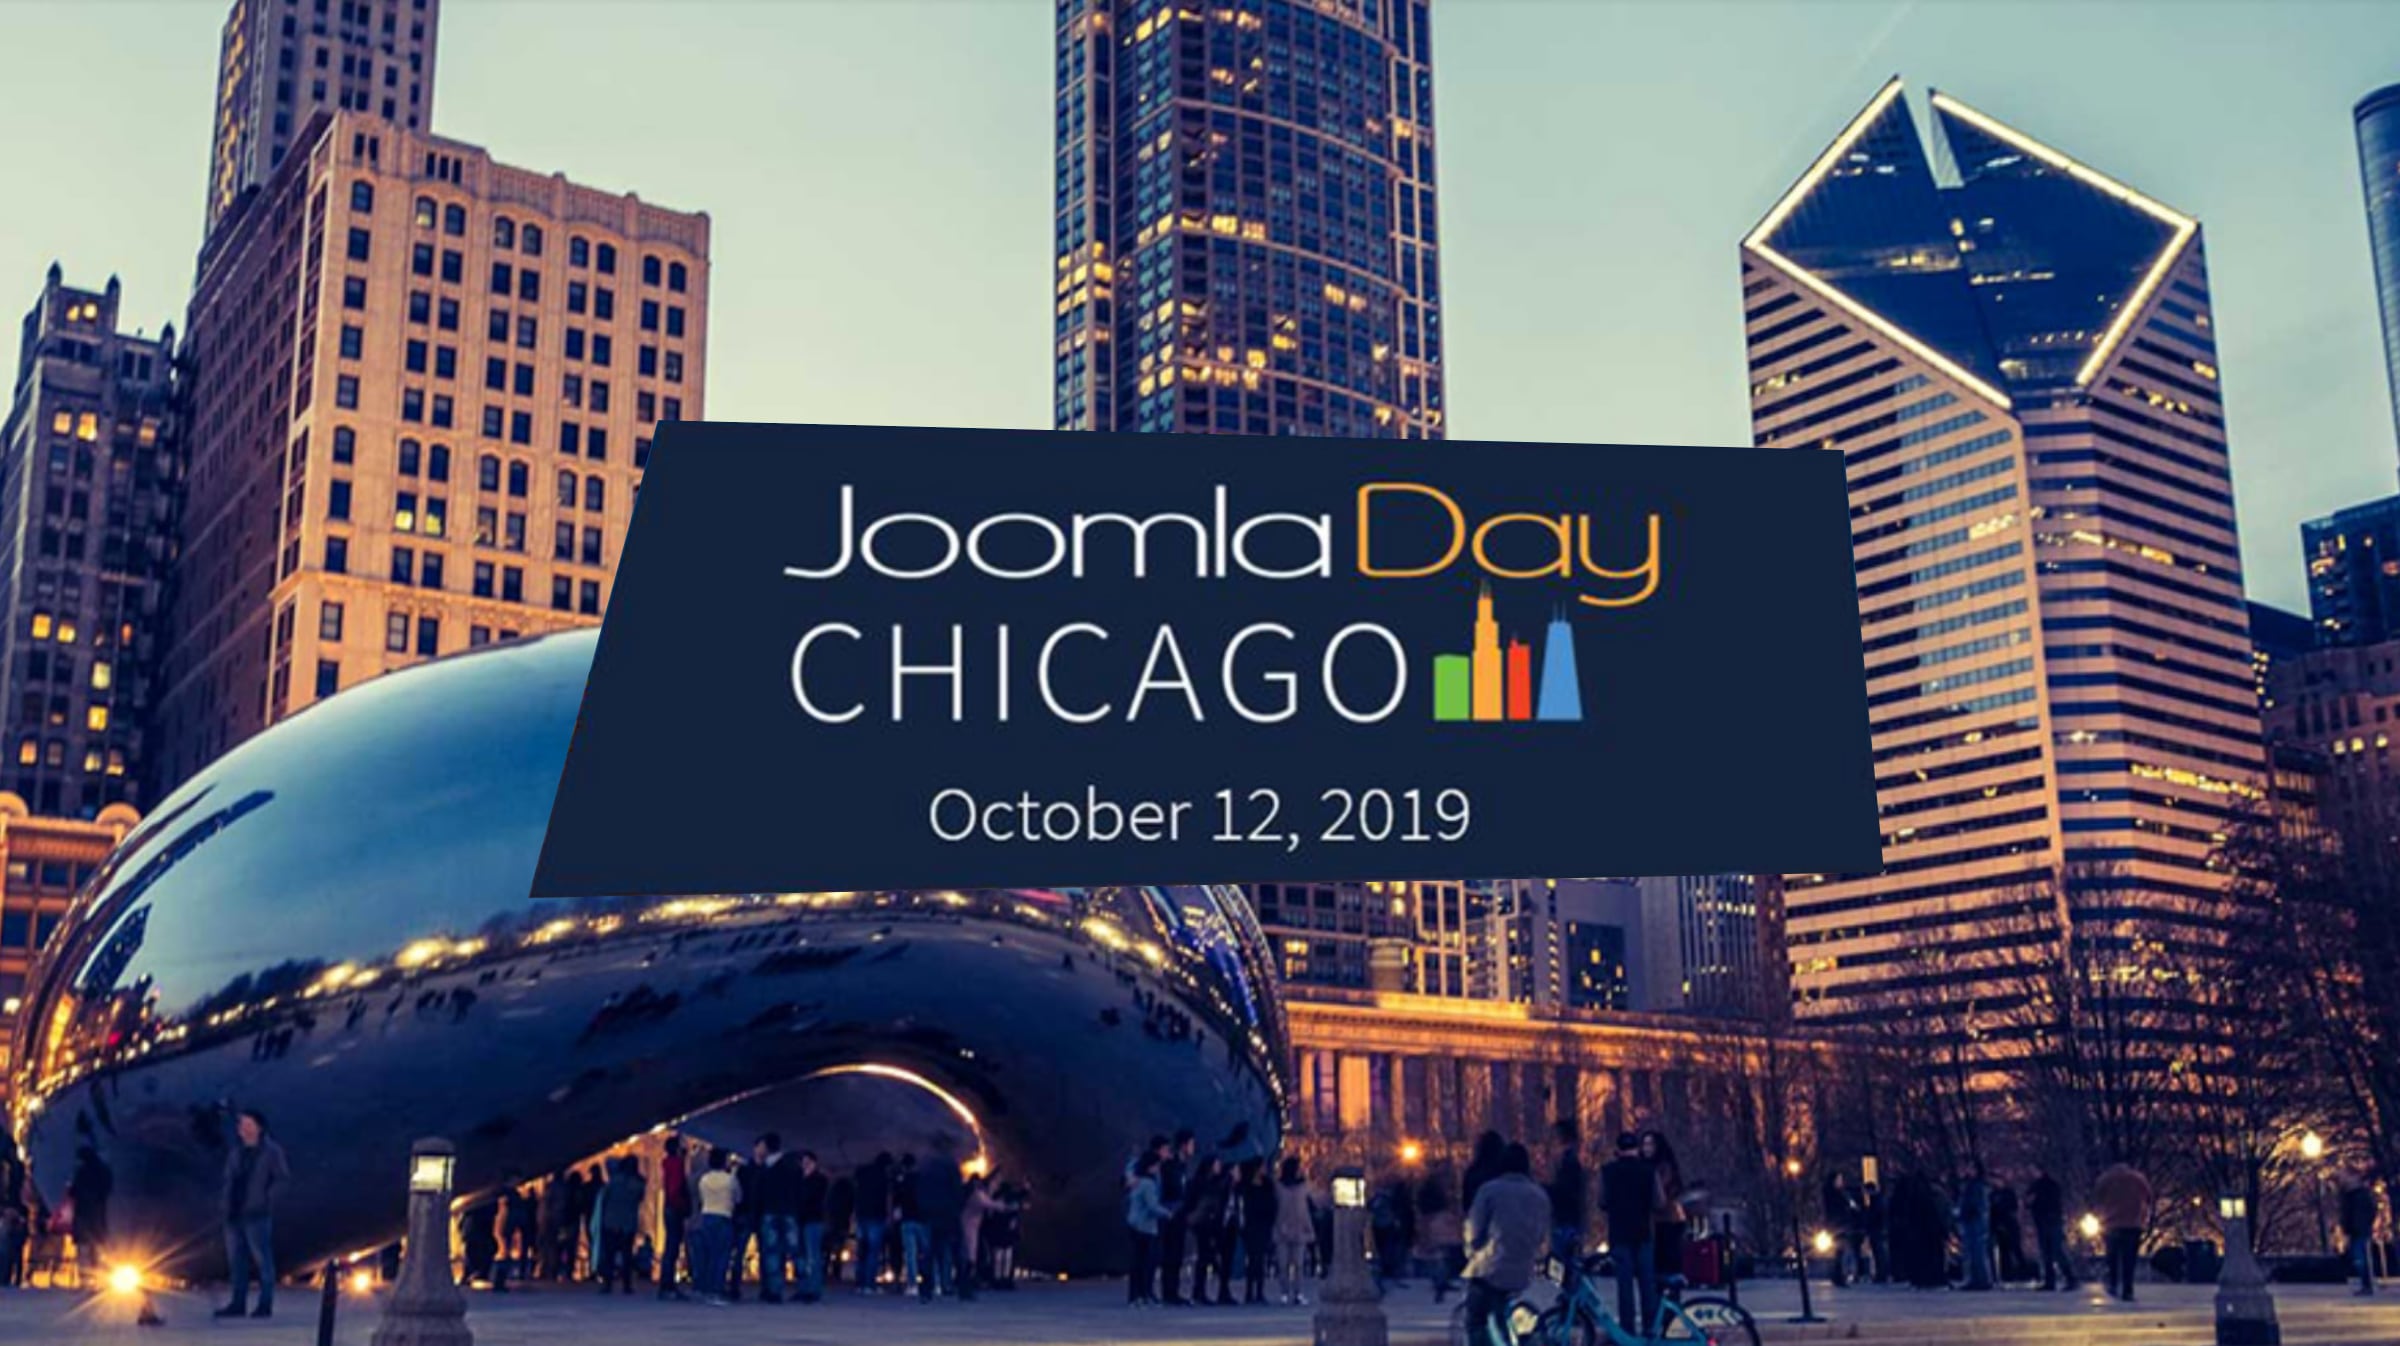 JoomlaDay Chicago 2019